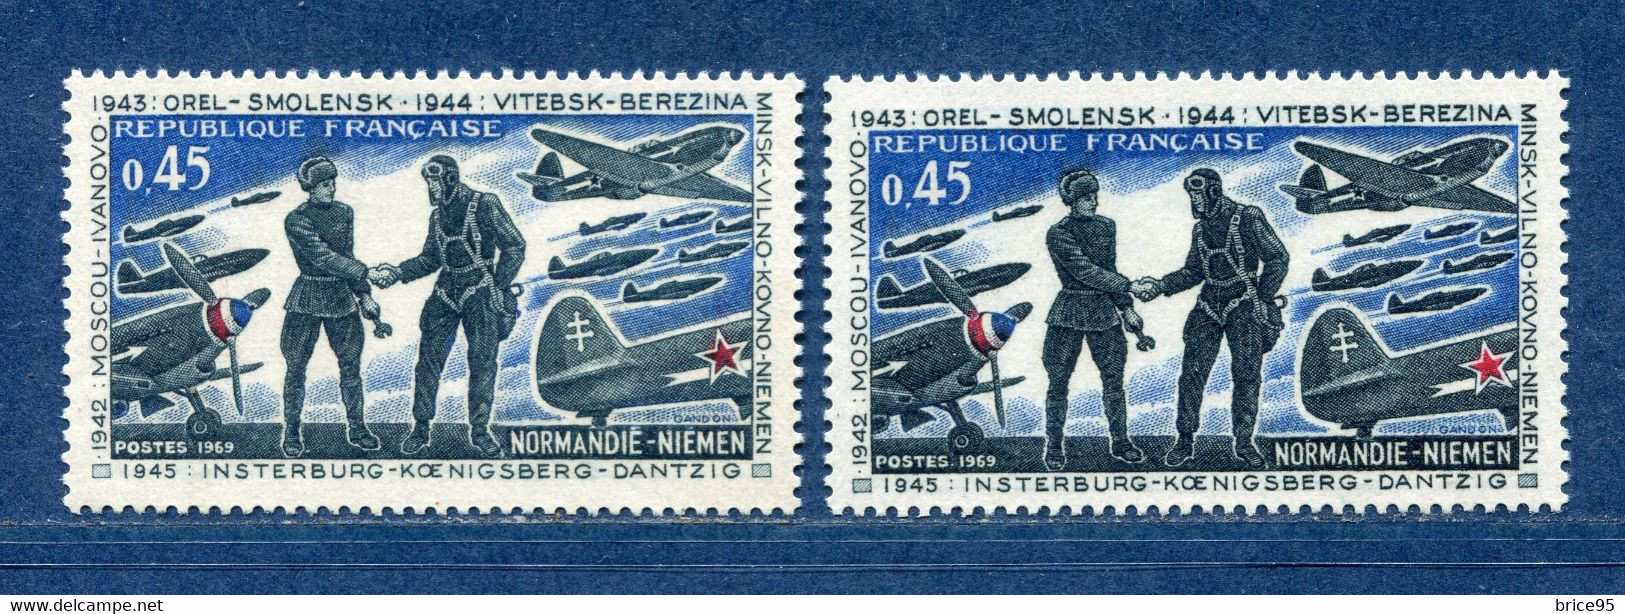 ⭐ France - Variété - YT N° 1606 - Couleurs - Pétouilles - Neuf Sans Charnière - 1969 ⭐ - Unused Stamps